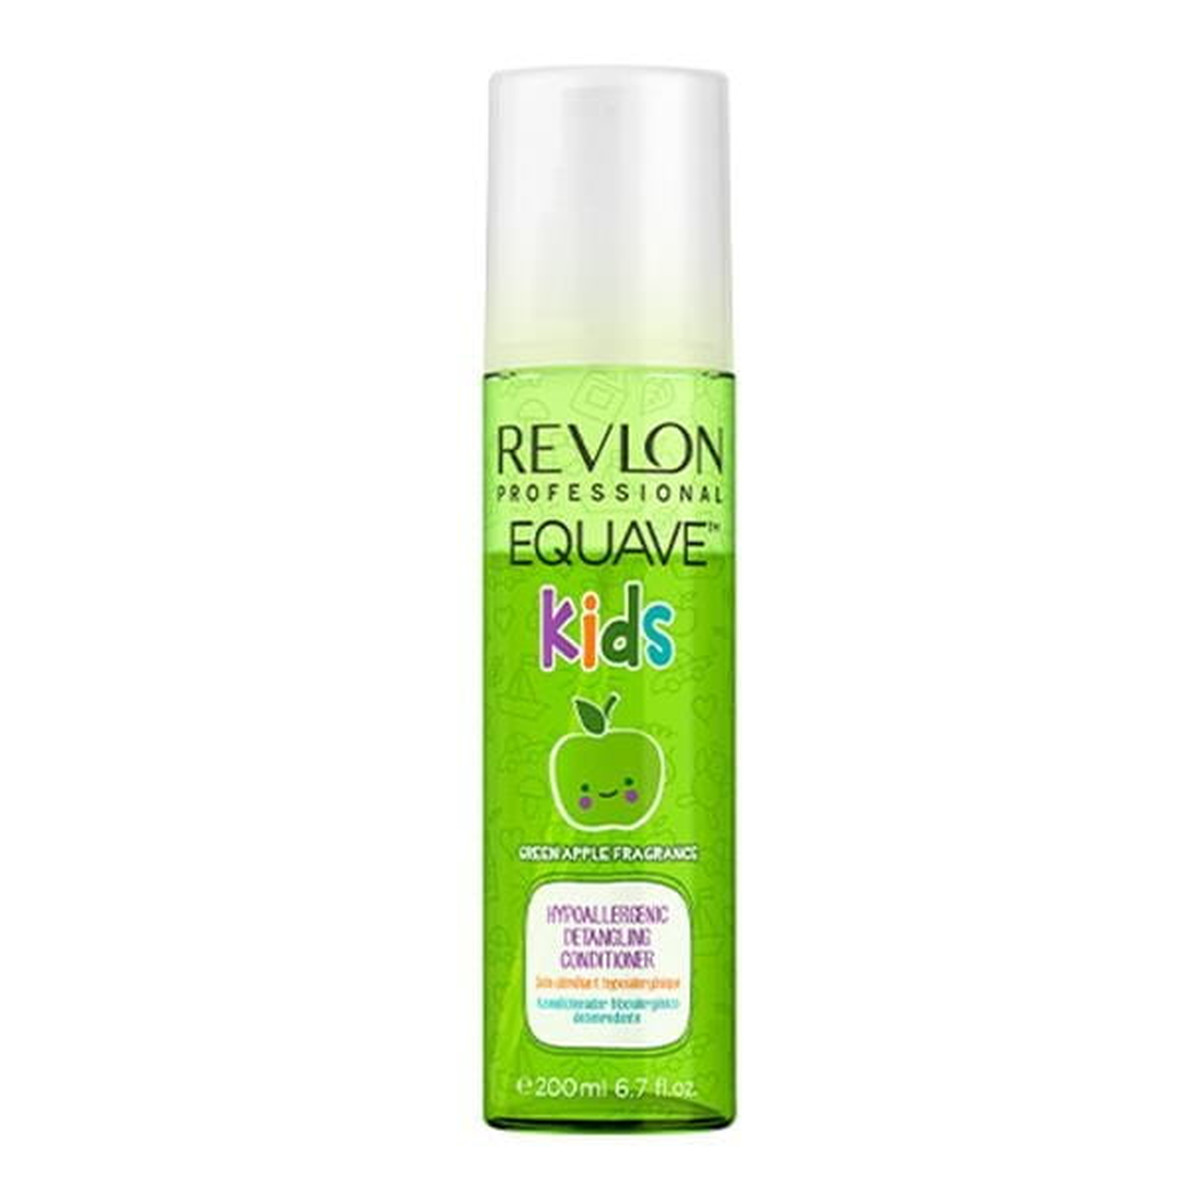 Revlon Equave Kids Green Apple odżywka dla dzieci ułatwiająca rozczesywanie 200ml